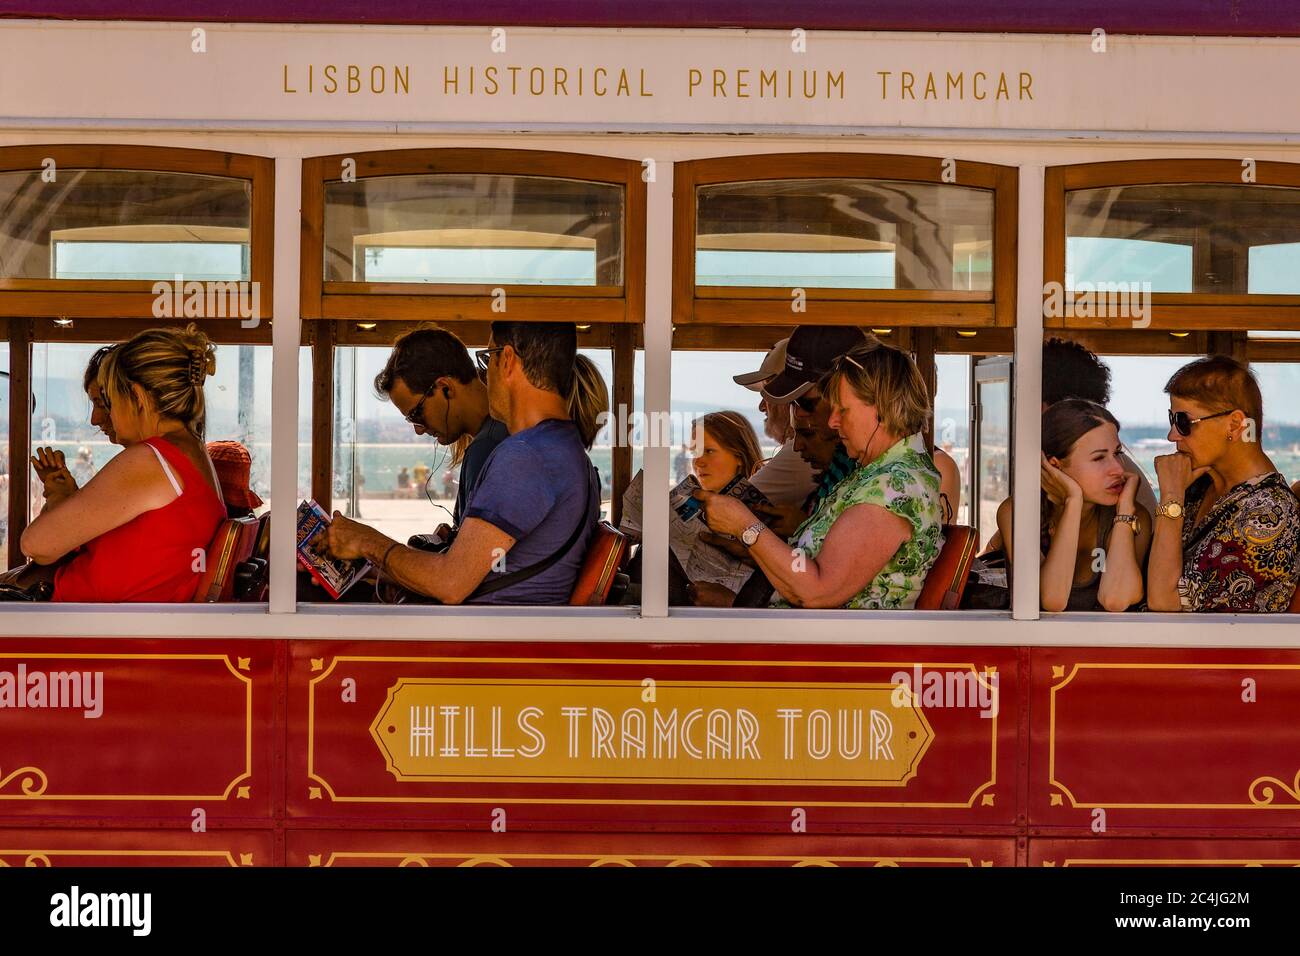 Portugal Lisbonne - les trams caractéristiques de Lisbonne font partie intégrante des transports en commun de la ville Banque D'Images